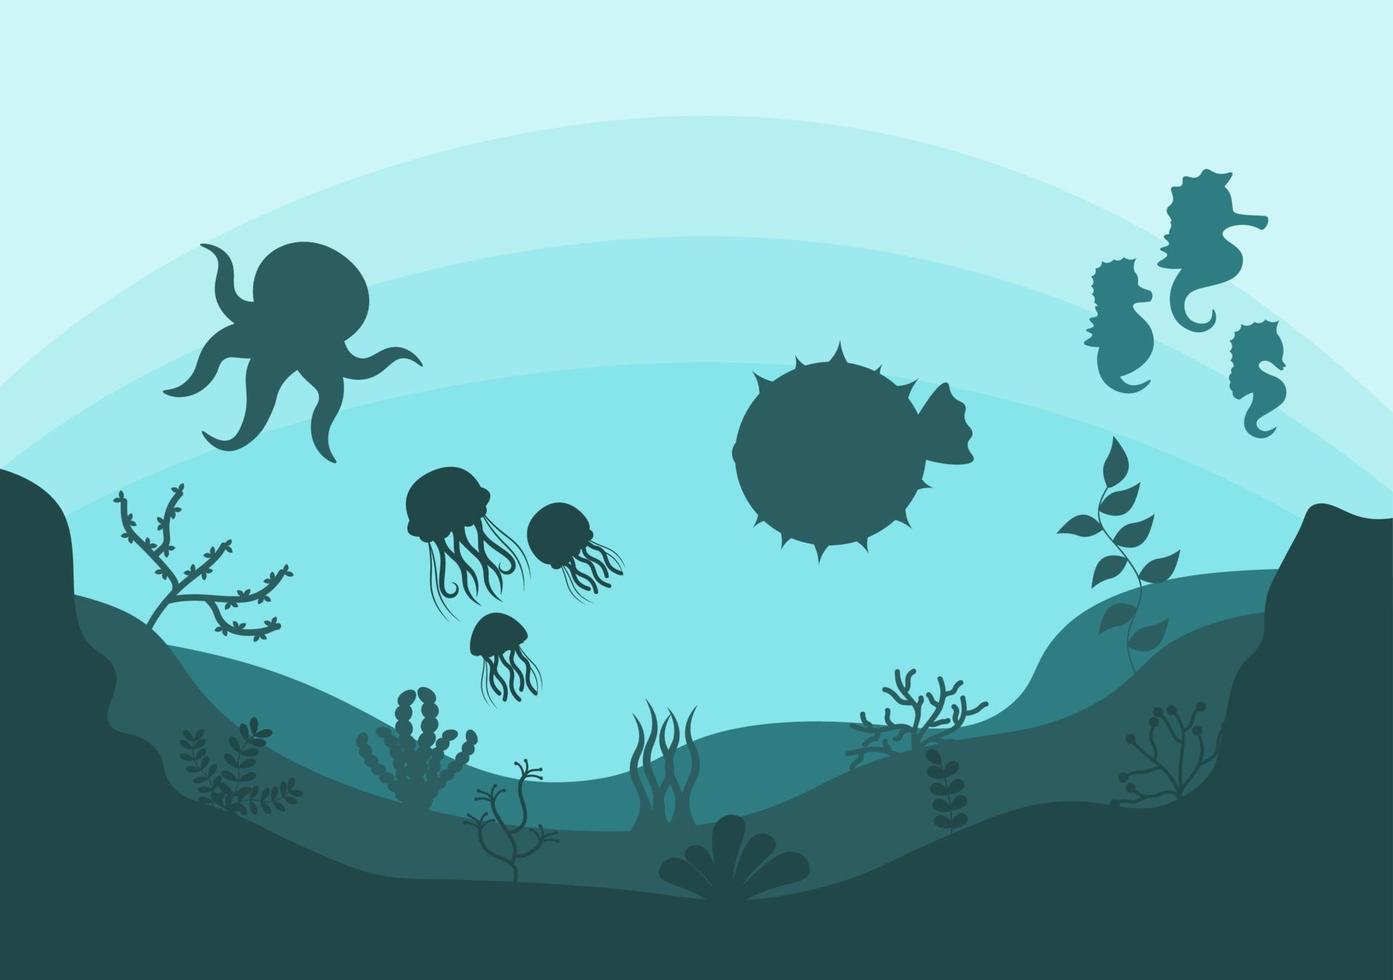 paesaggi sottomarini e simpatica vita animale nel mare con cavallucci marini, stelle marine, polpi, tartarughe, squali, pesci, meduse, granchi. illustrazione vettoriale